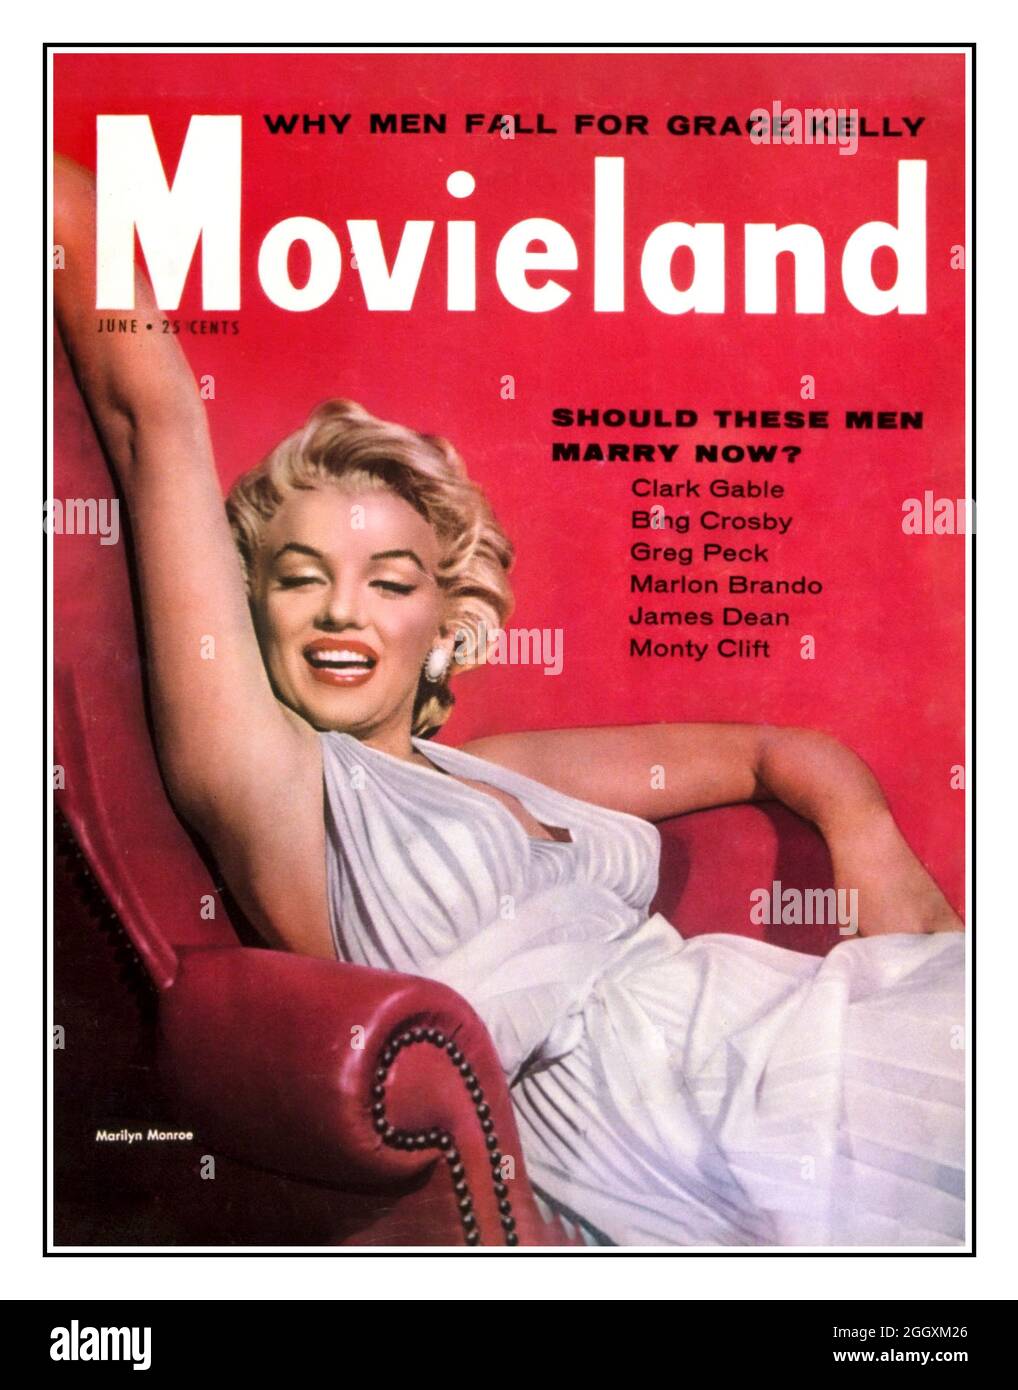 MARILYN MONROE Titelseite DES Magazins der 1950er JAHRE MOVIELAND mit der Filmschauspielerin Marilyn Monroe, die auf einem Lederstuhl posiert Hollywood USA Stockfoto